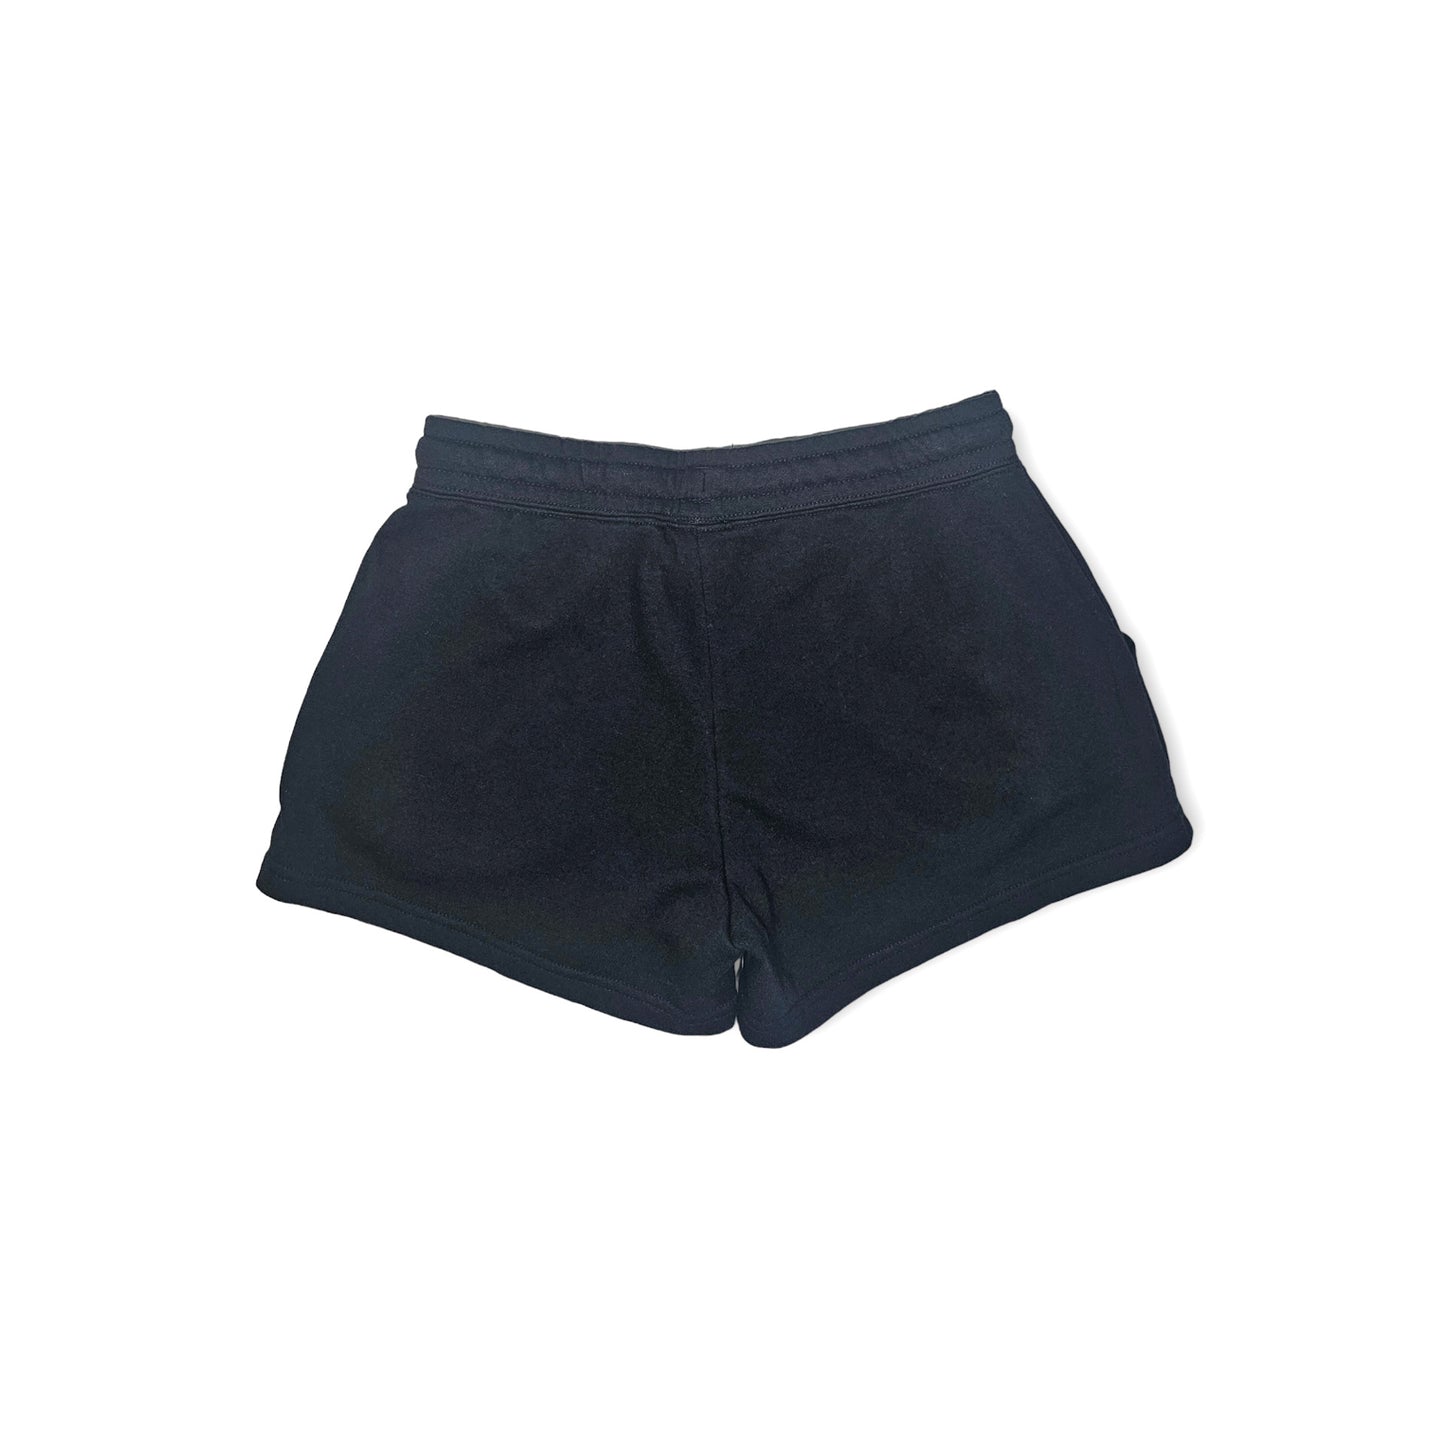 AKI x CHI - LAINE Shorts in Asphalt